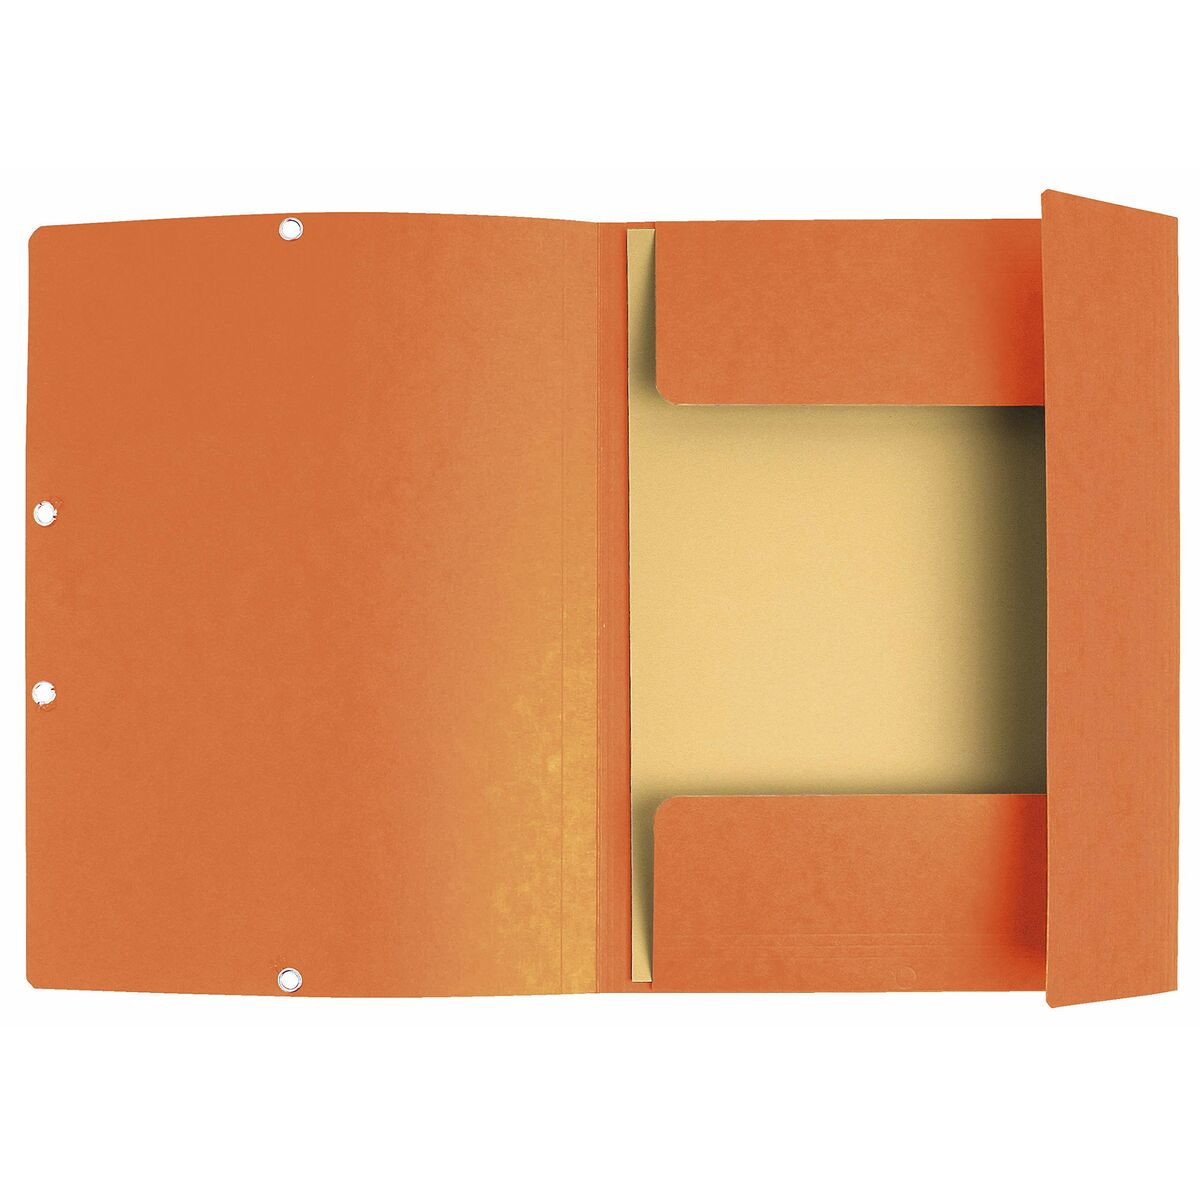 Folder Exacompta Orange A4 (10Units)